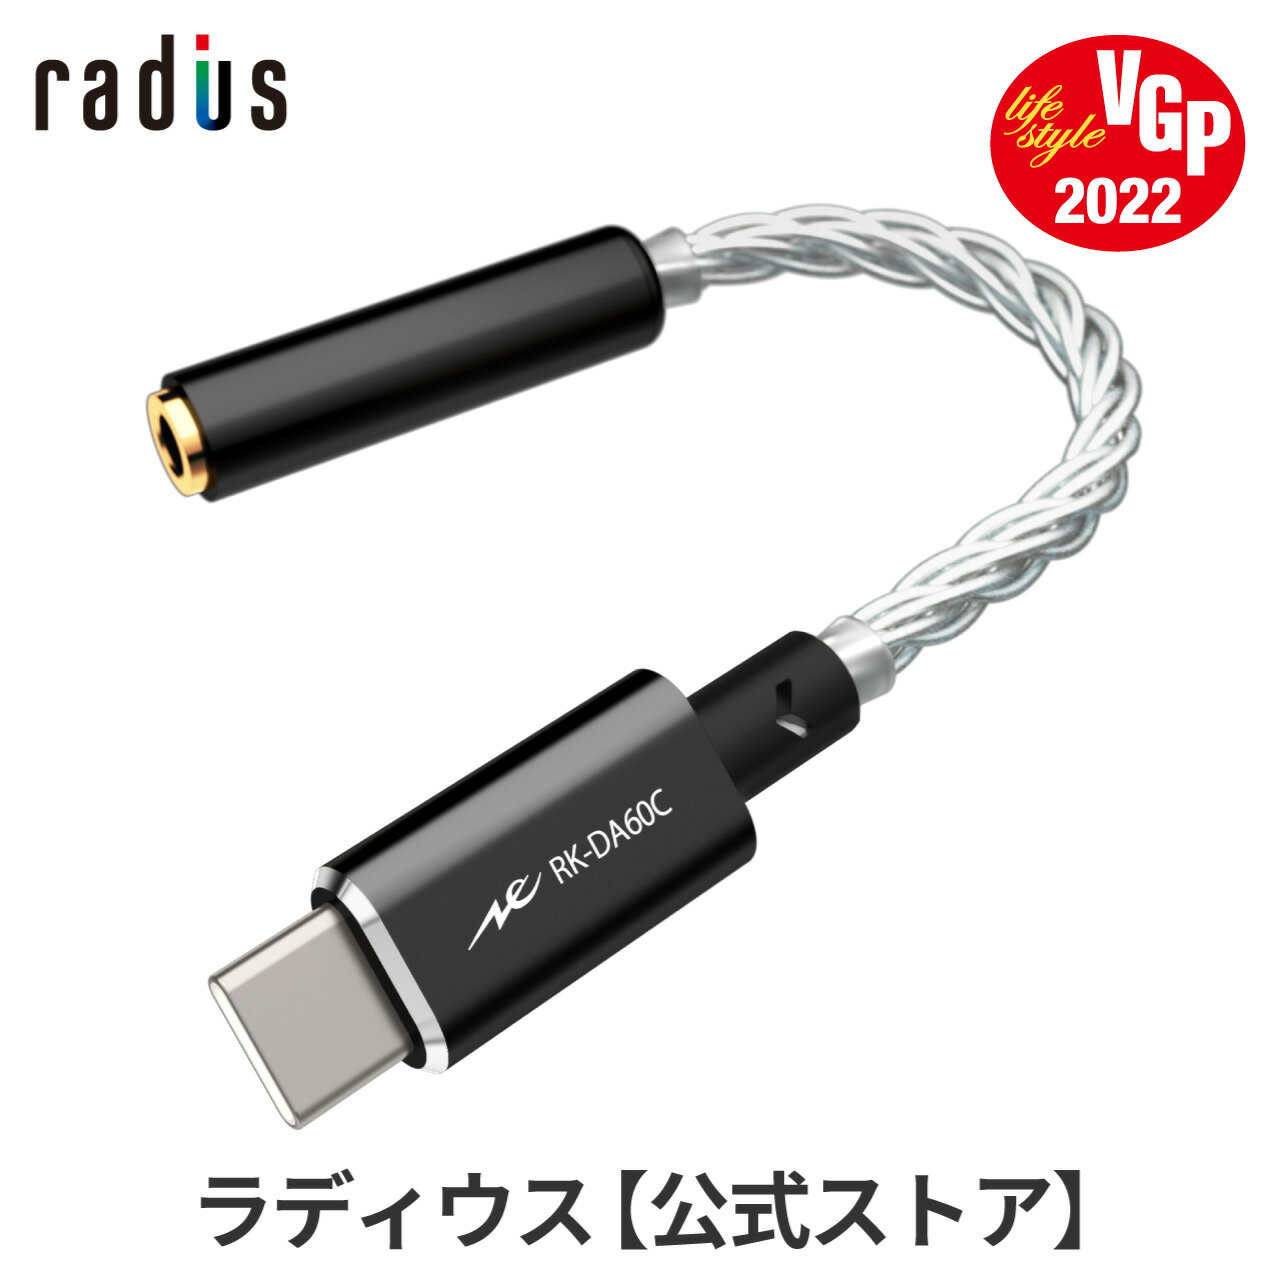 アンプ, ヘッドホンアンプ P10 RK-DA60CK DAC USB Type-Cradius Ne new ear DAC 32bit384kHz Android USB-C Type-A 